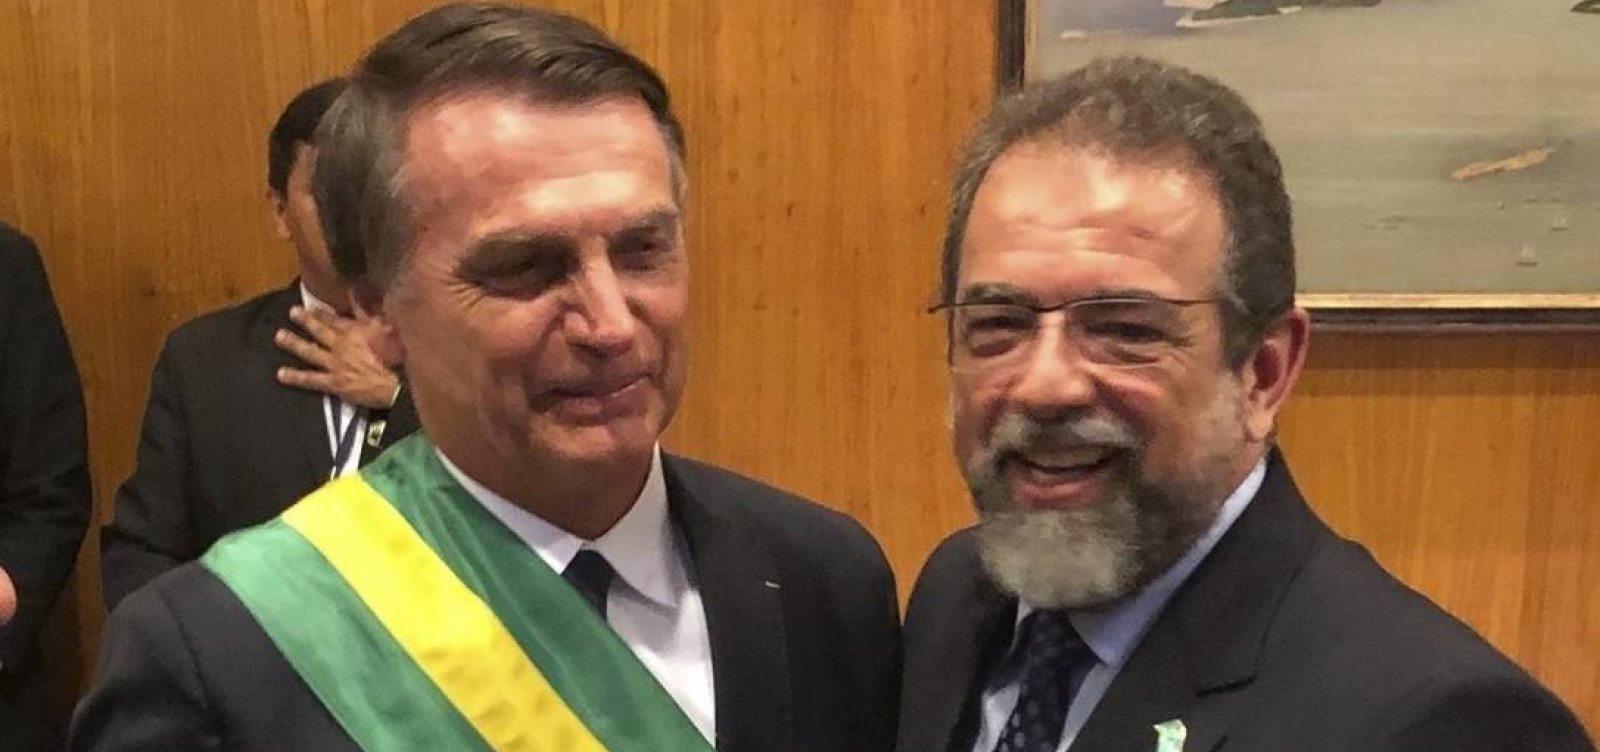 Nenhuma indústria bélica vai investir no Brasil sem redução de impostos, diz presidente da Taurus